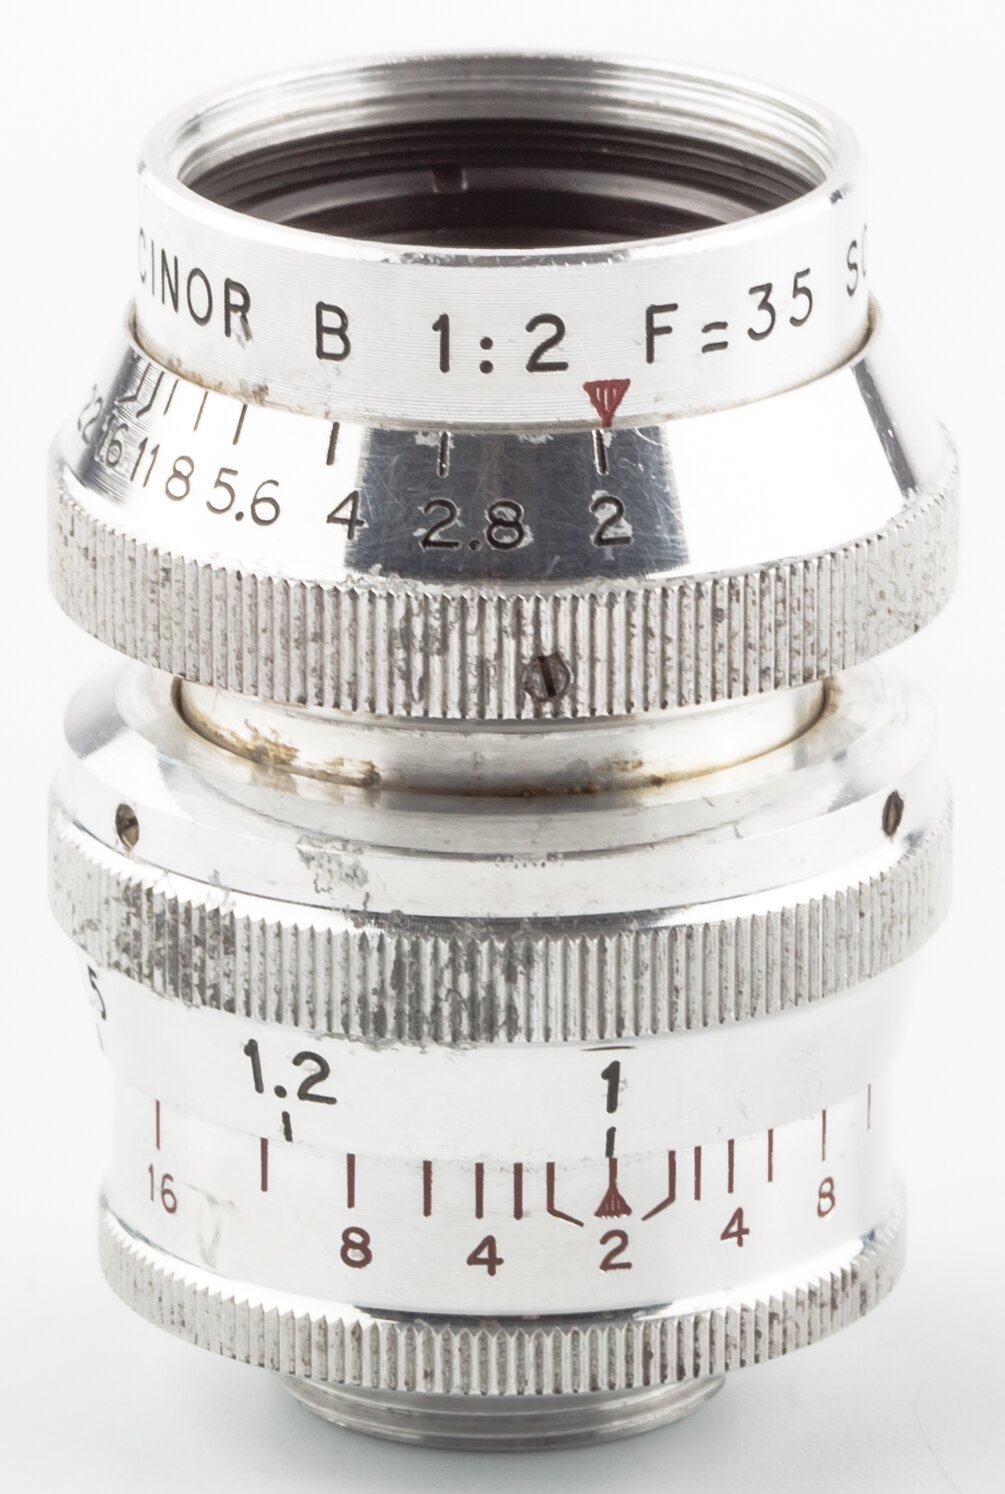 SOM Berthiot Objektiv Cinor B 35mm 2 d-mount